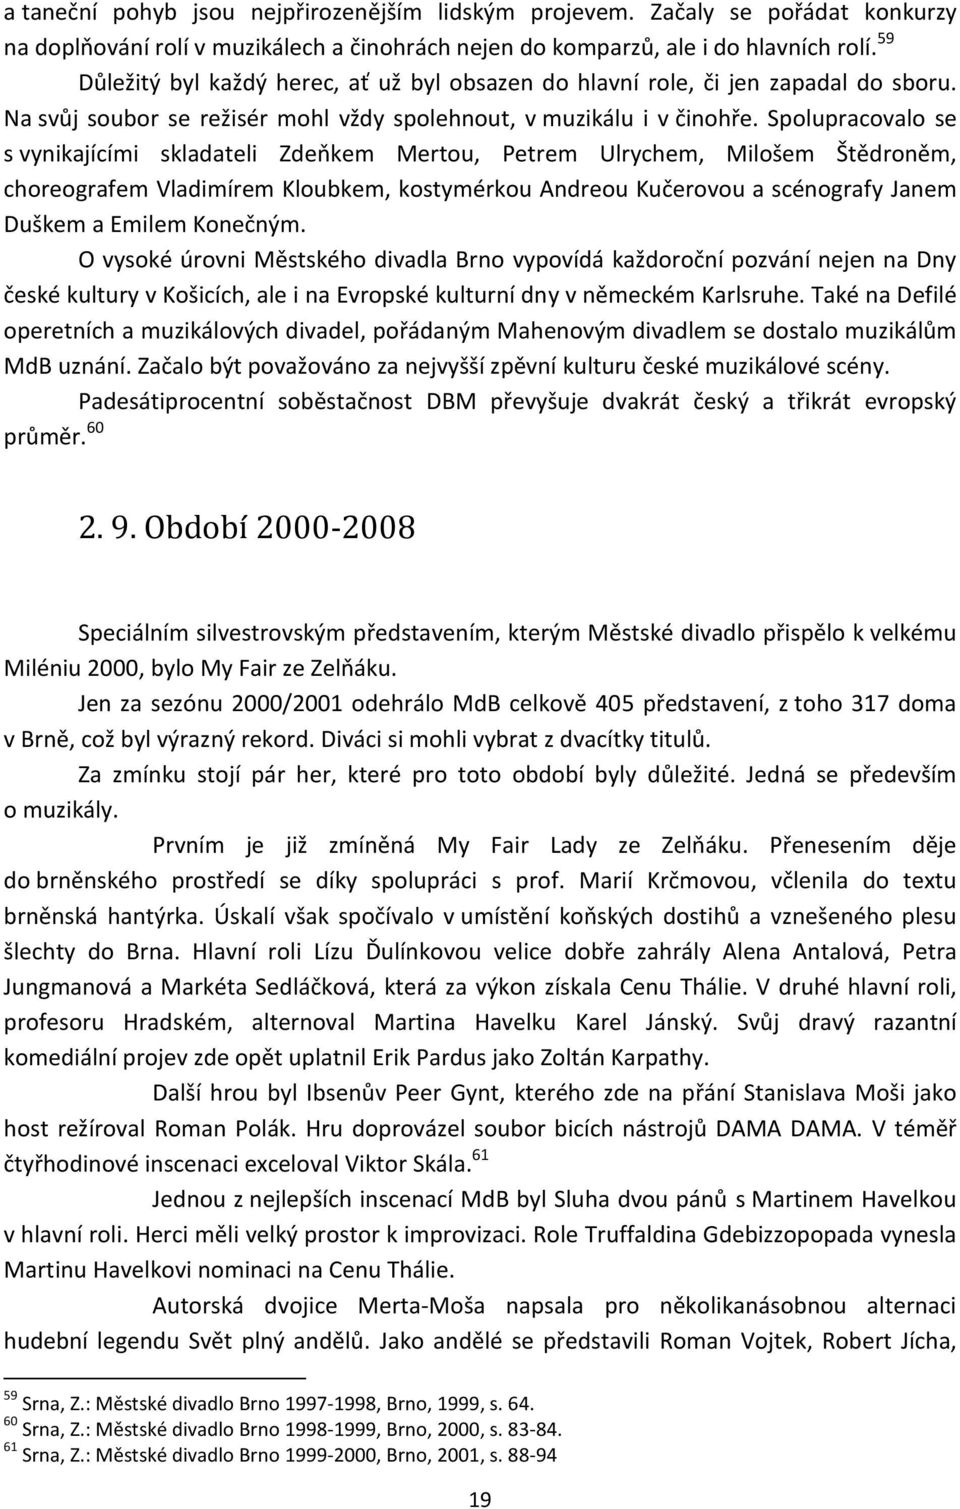 Městské divadlo Brno - PDF Stažení zdarma